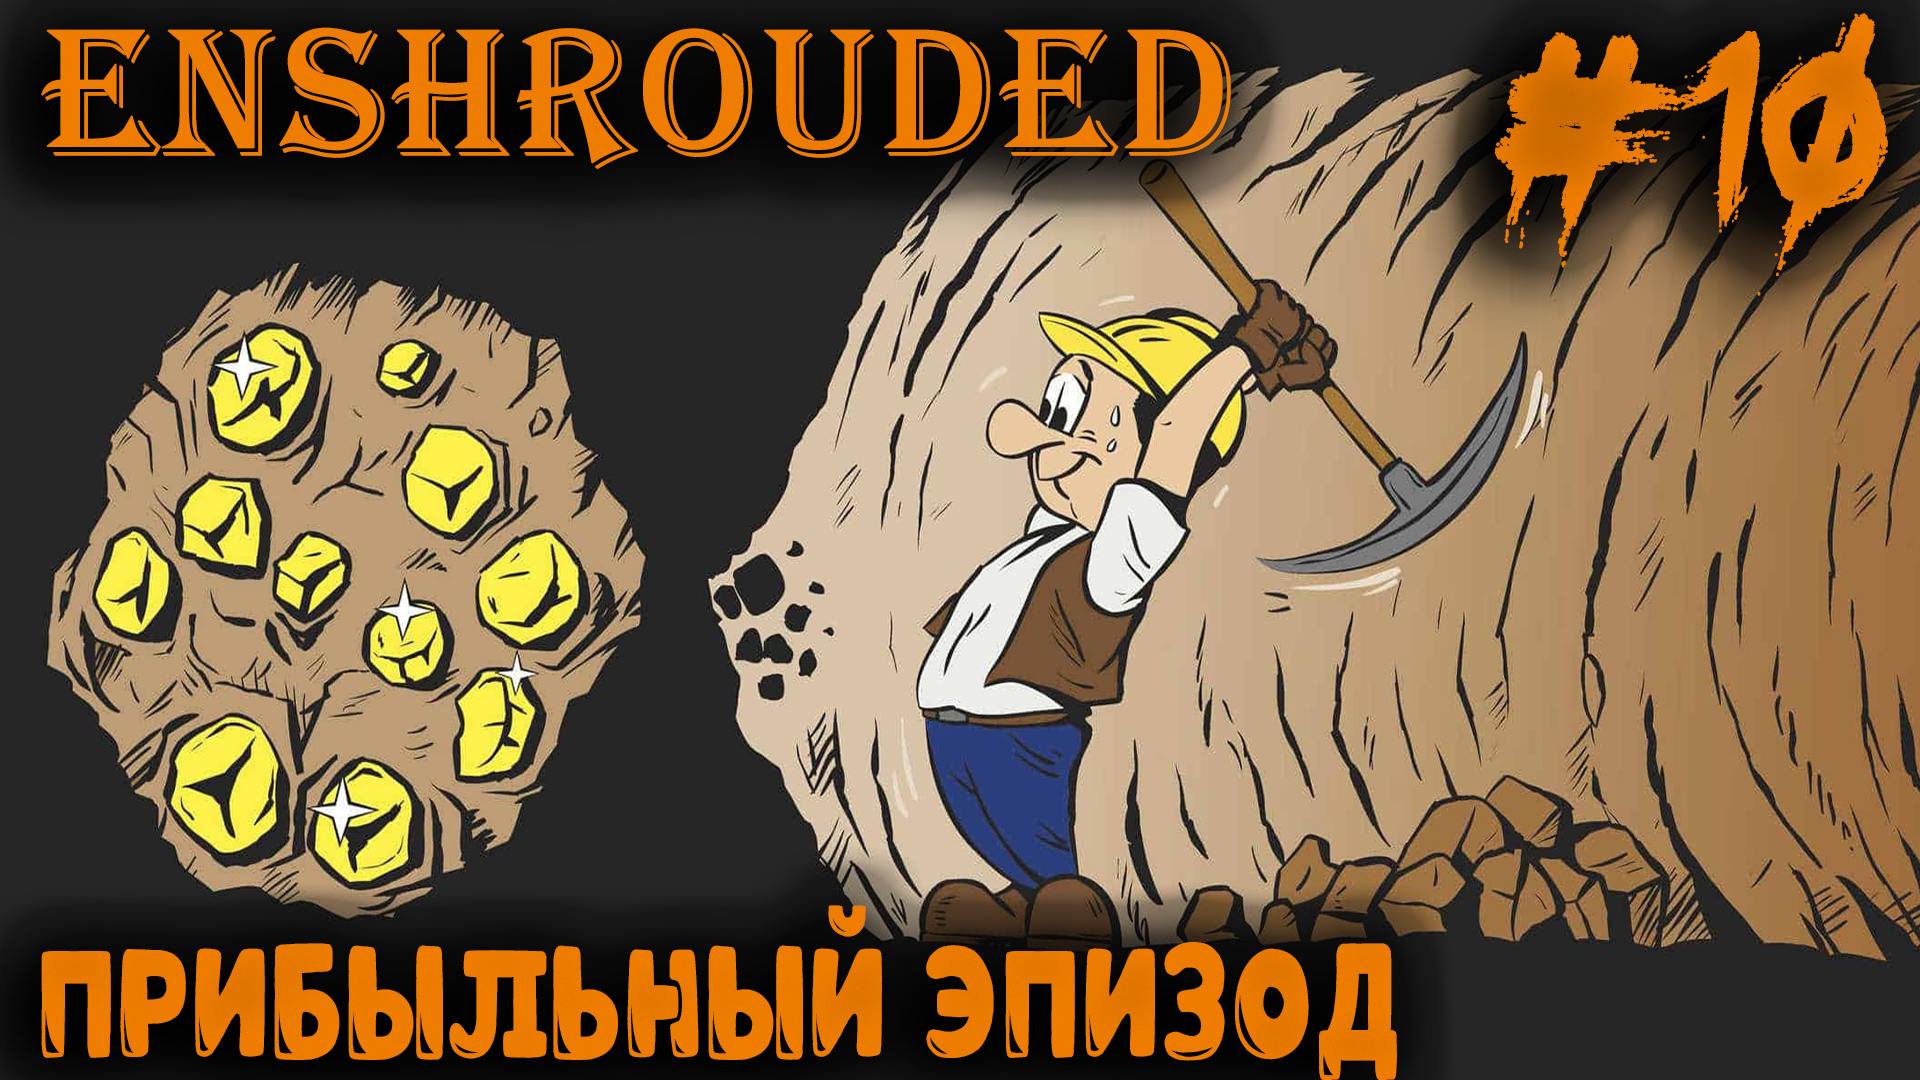 Enshrouded - где найти глину, янтарь, медь, лён, индигоферу и другие ништяки #10